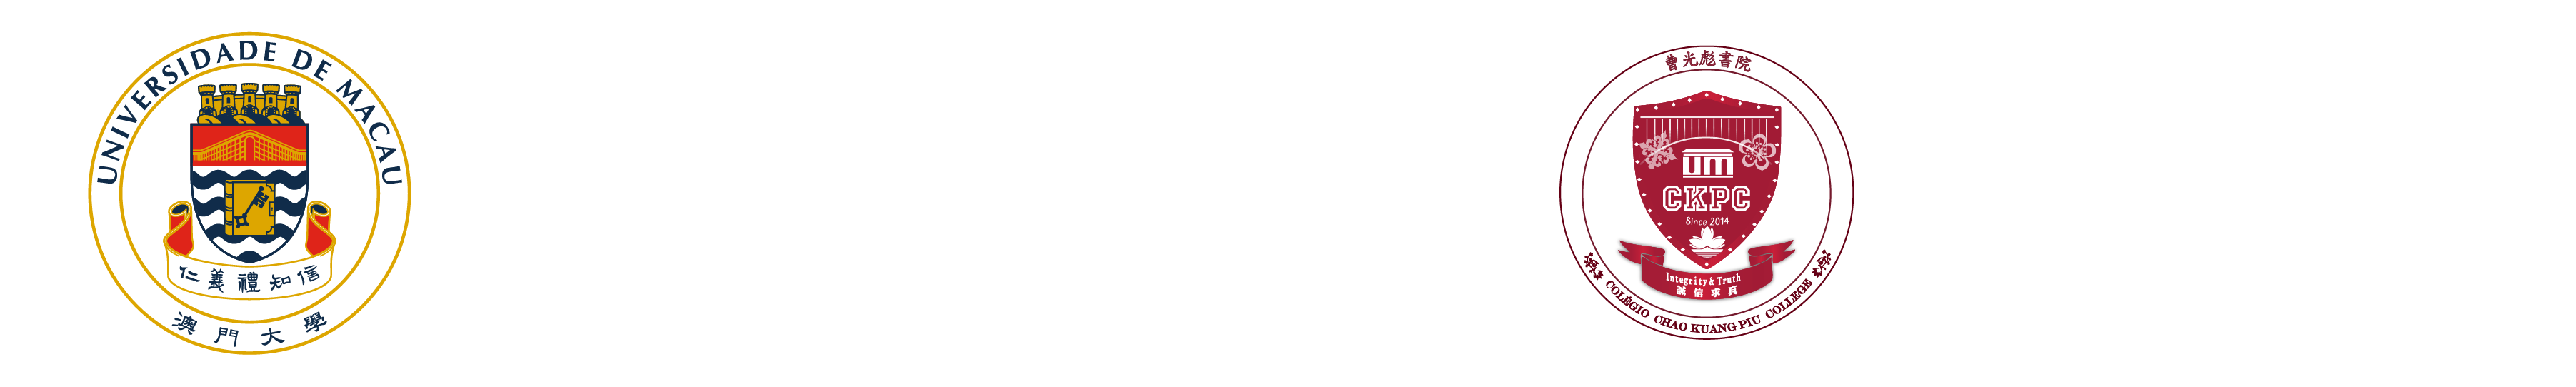 Chao Kuang Piu College | University of Macau Logo